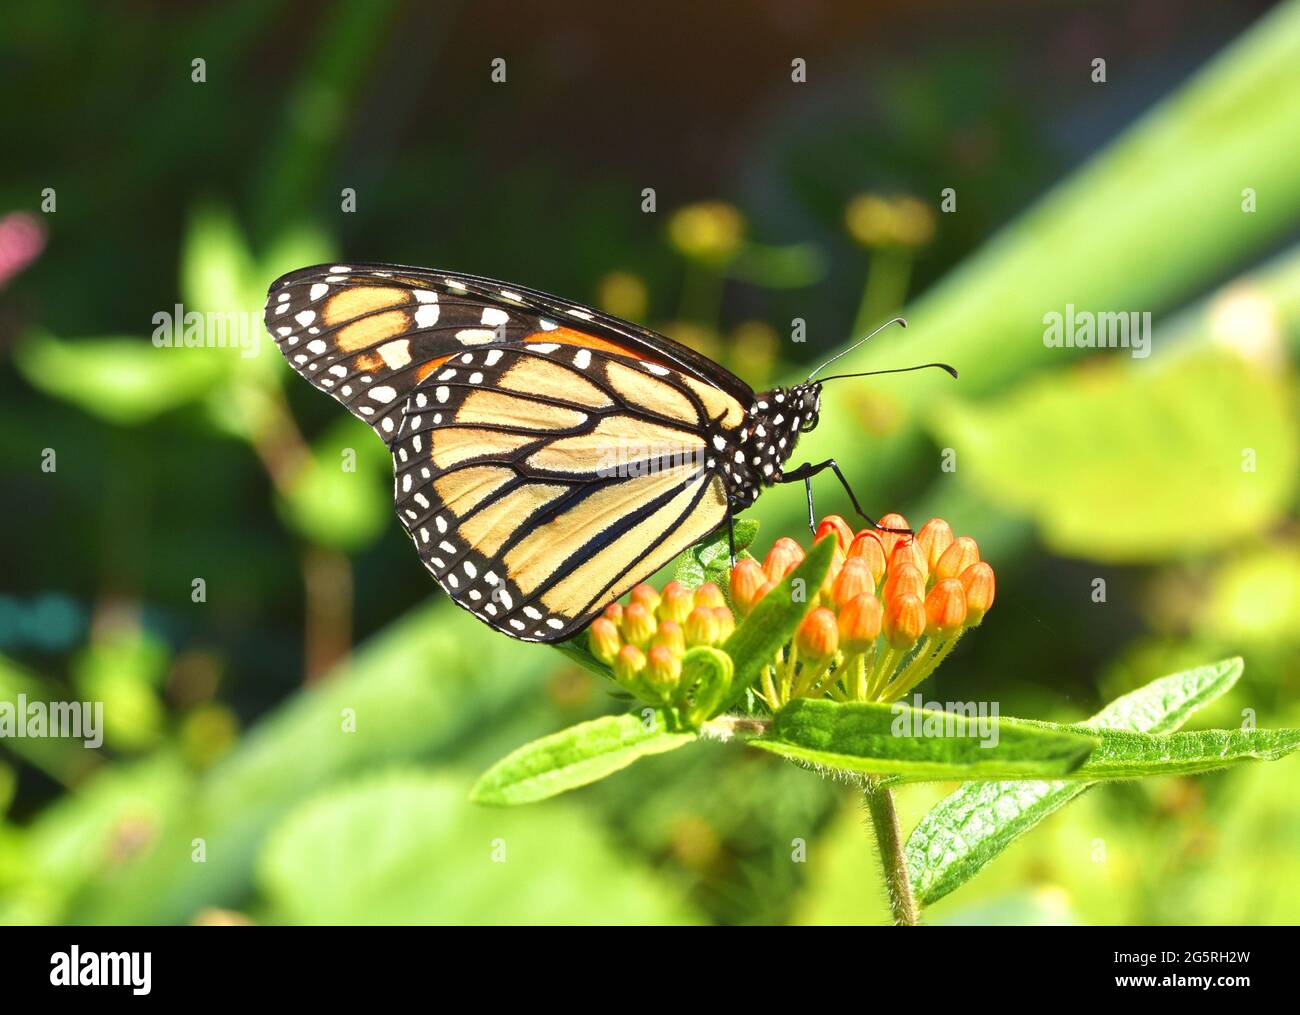 Ein Monarch Butterfly (Danaus plexippus), der auf den orangefarbenen Blütenknospen des Schmetterlingsgras (Asclepias tuberosa) ruht. Speicherplatz kopieren. Nahaufnahme. Stockfoto